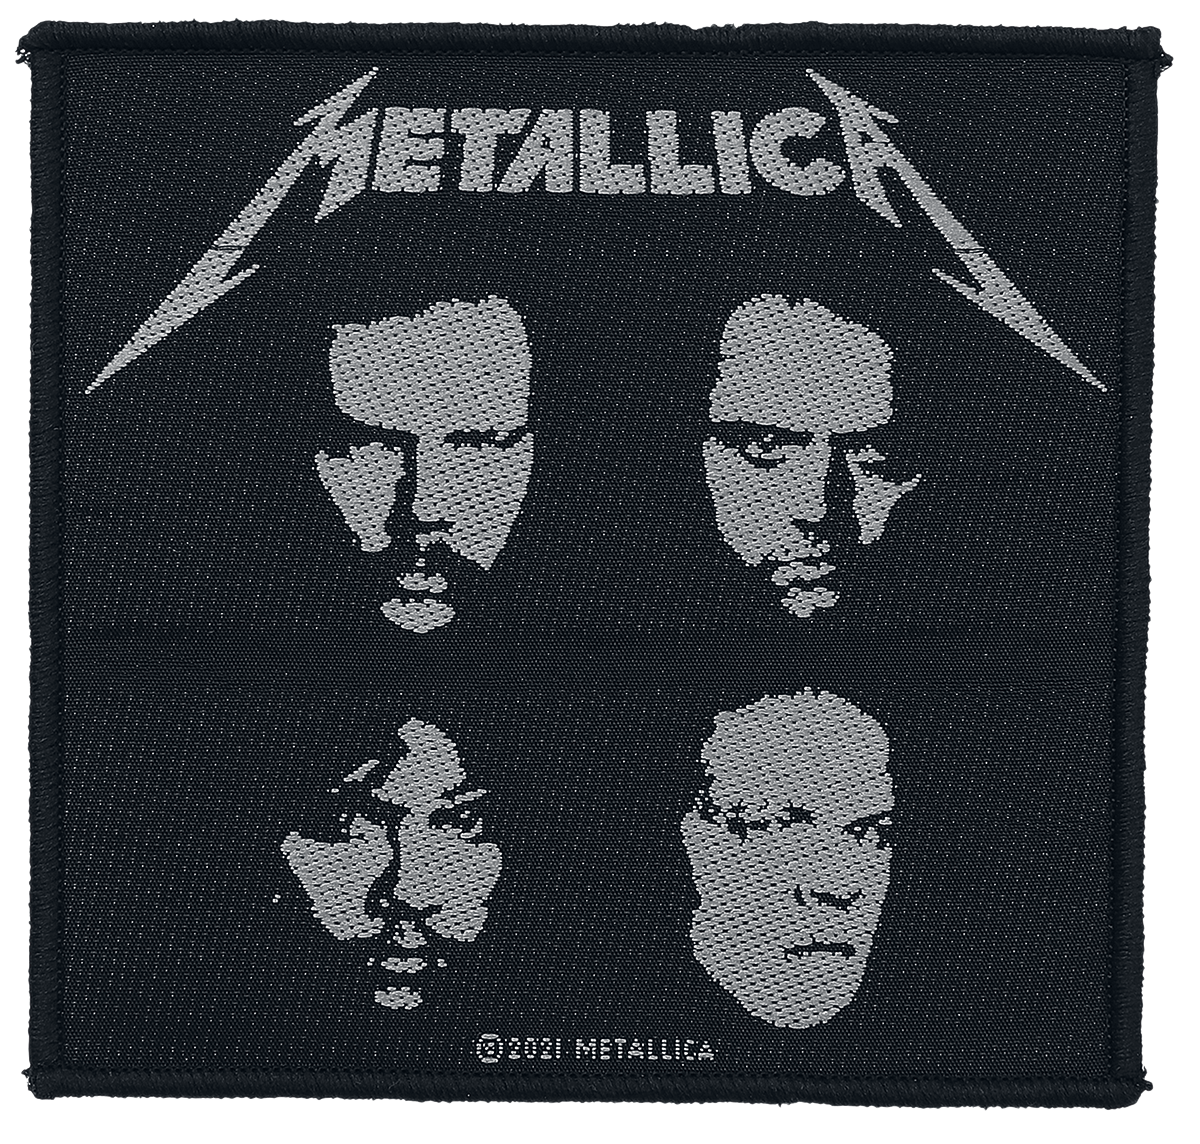 Metallica - Black Album - Patch - schwarz| weiß